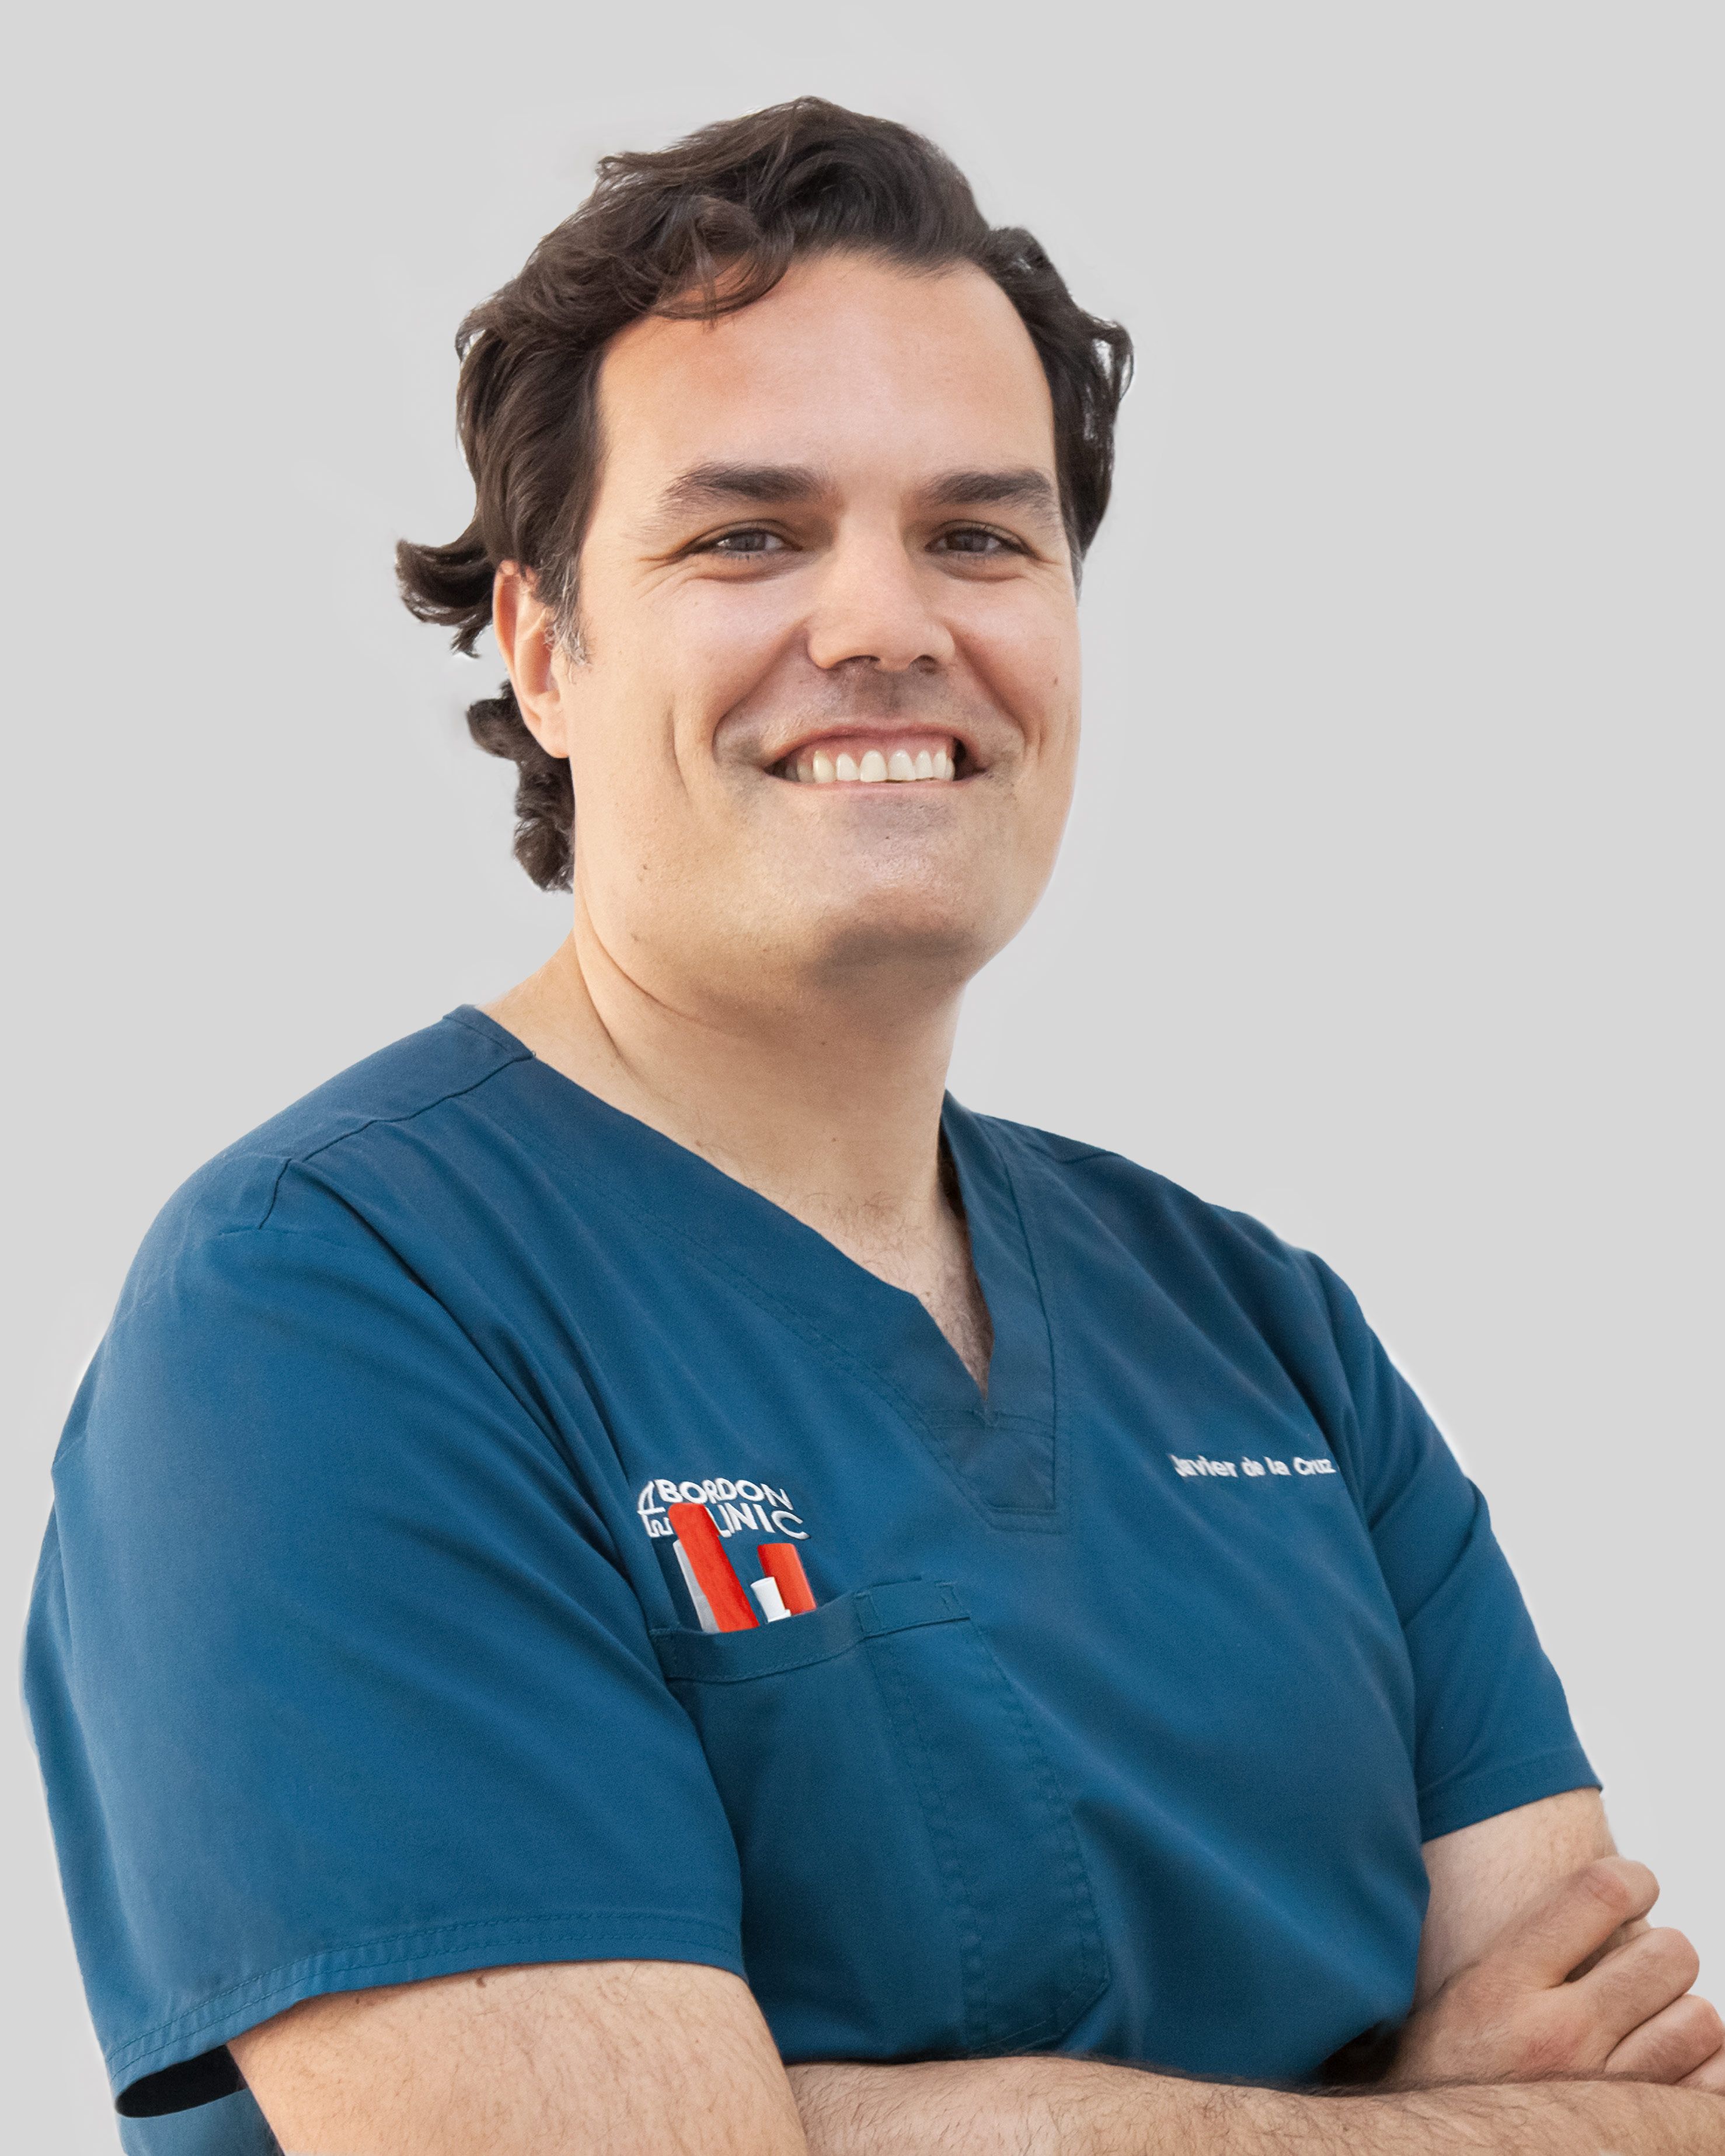 Dr. Javier De La Cruz - Clínica Dental BordonClinic